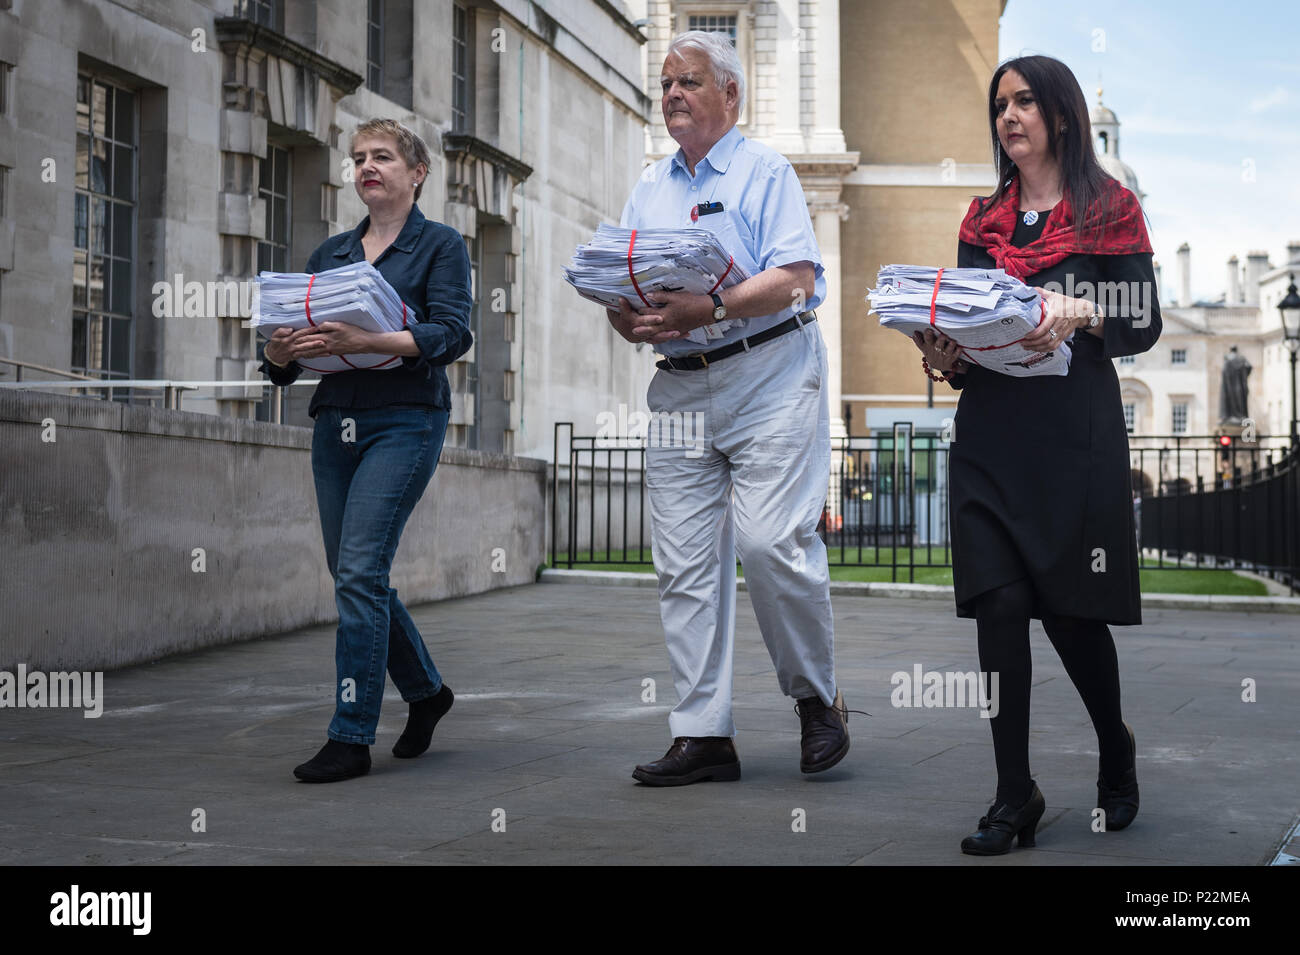 Ministère de la Défense, Horse Guards Avenue, Londres, 18 juillet 2016. Des représentants de la CND dans plus de 40 000 signatures recueillies pour un 'Stop Triden Banque D'Images